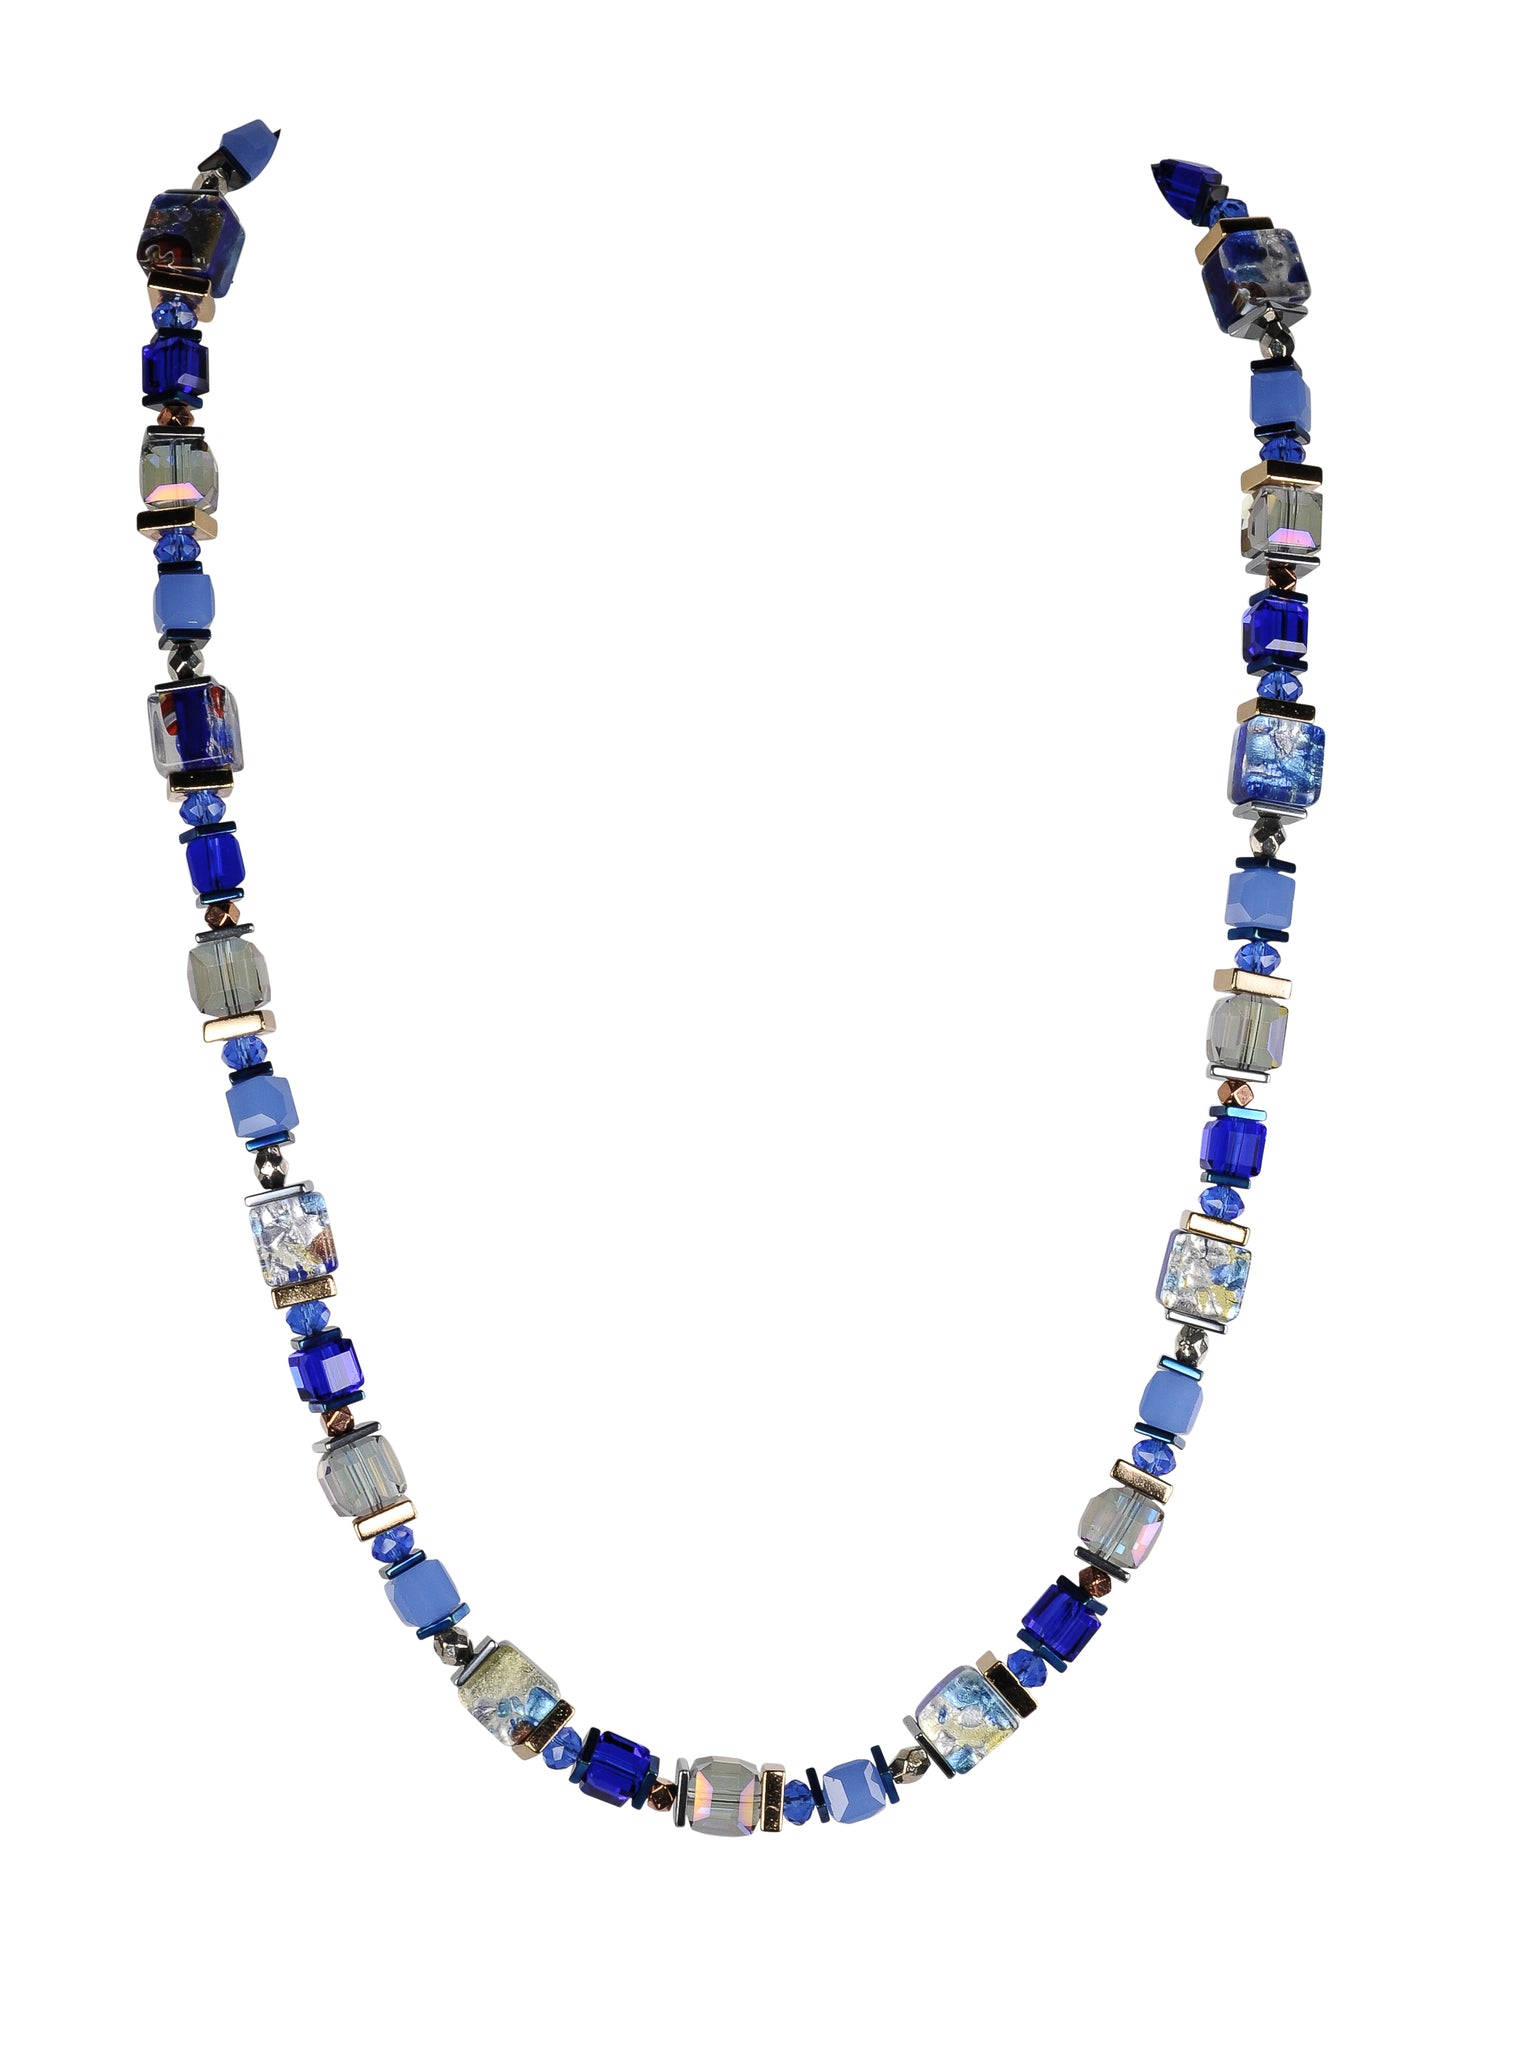 Sparkling blue foil glass necklace